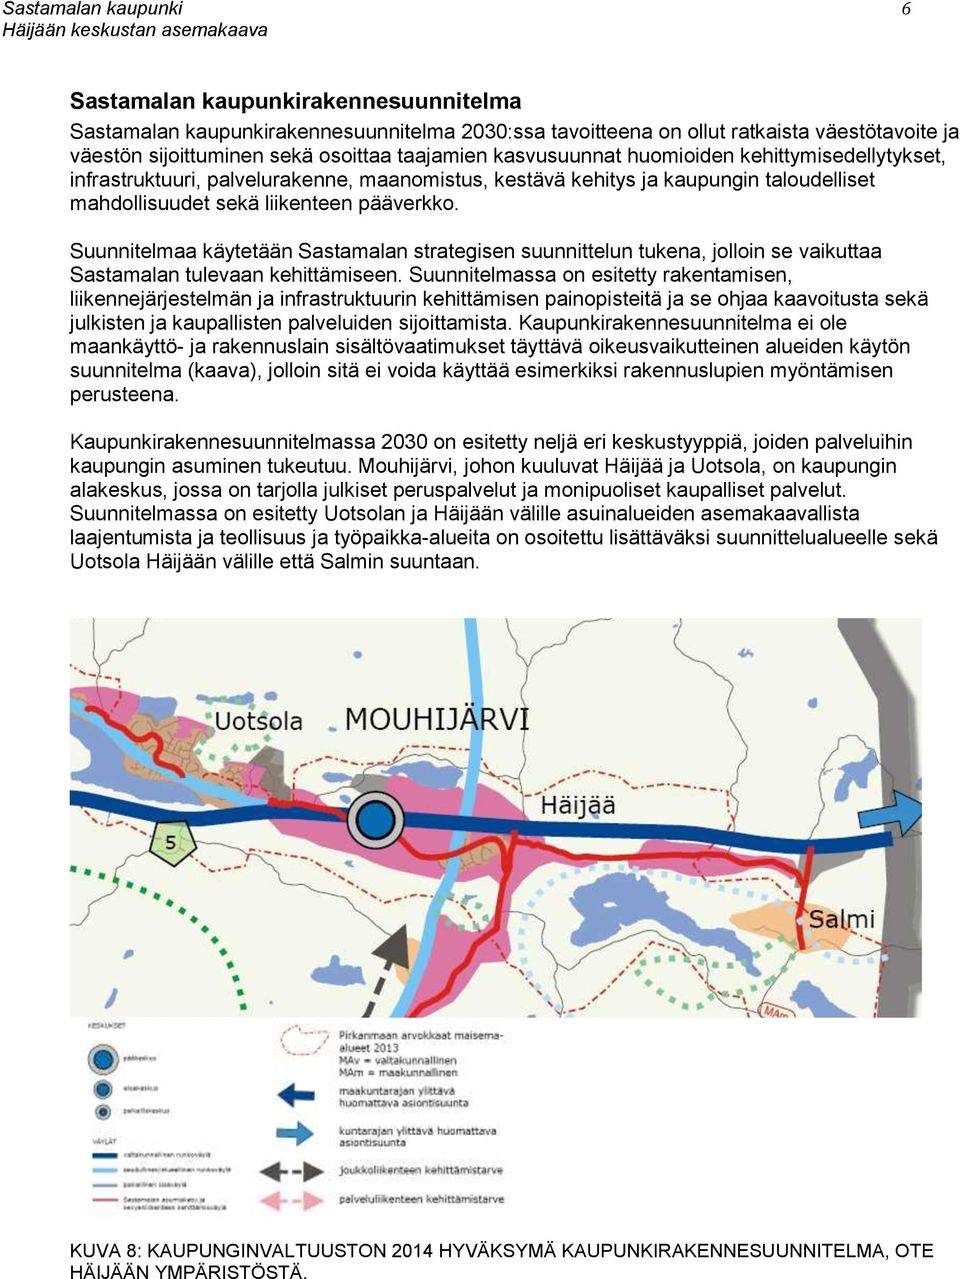 Suunnitelmaa käytetään Sastamalan strategisen suunnittelun tukena, jolloin se vaikuttaa Sastamalan tulevaan kehittämiseen.